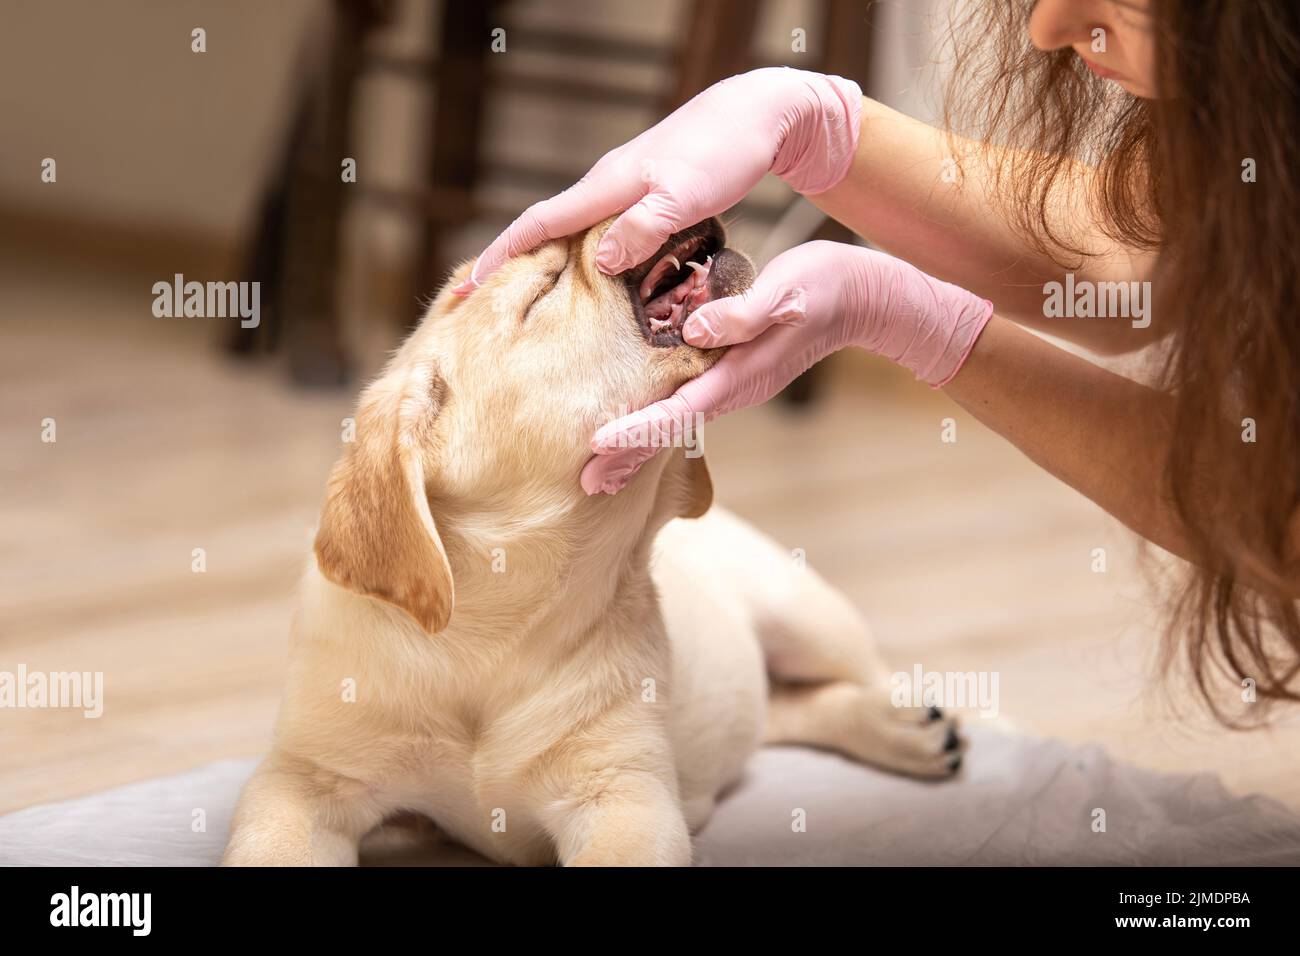 Nahaufnahme eines labrador-Hähnchen, dessen Zähne vom Tierarzt untersucht wurden. Professioneller Tierarzt, der die Zähne des Welpen überprüft. Stockfoto